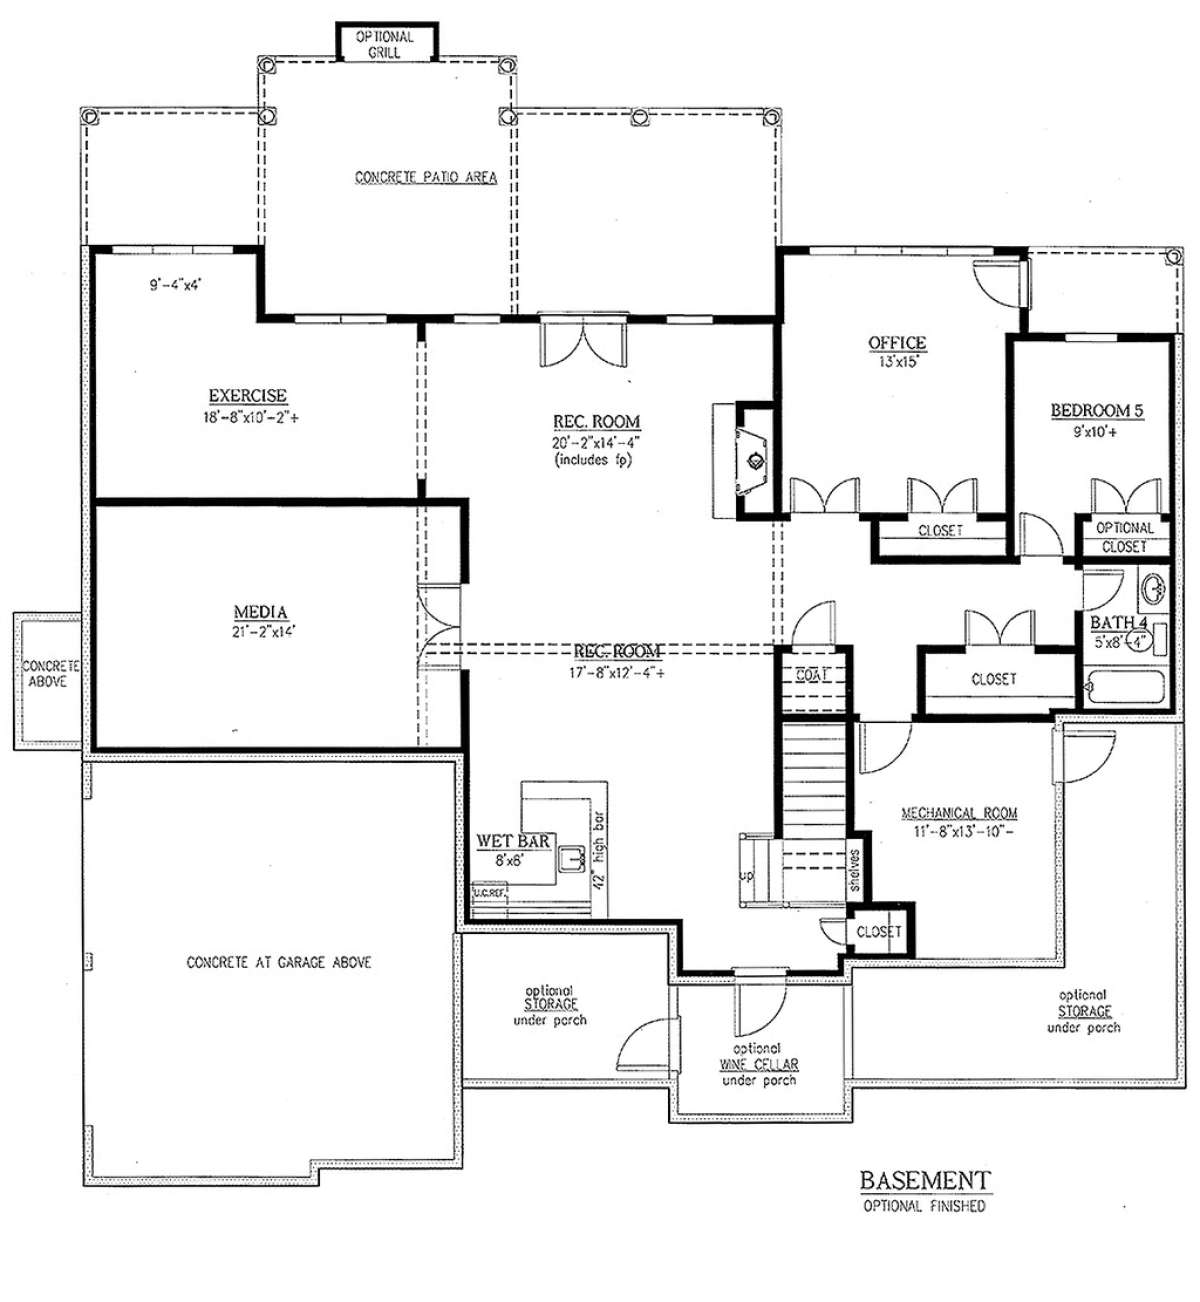 Basement Floor Plan for House Plan #286-00055